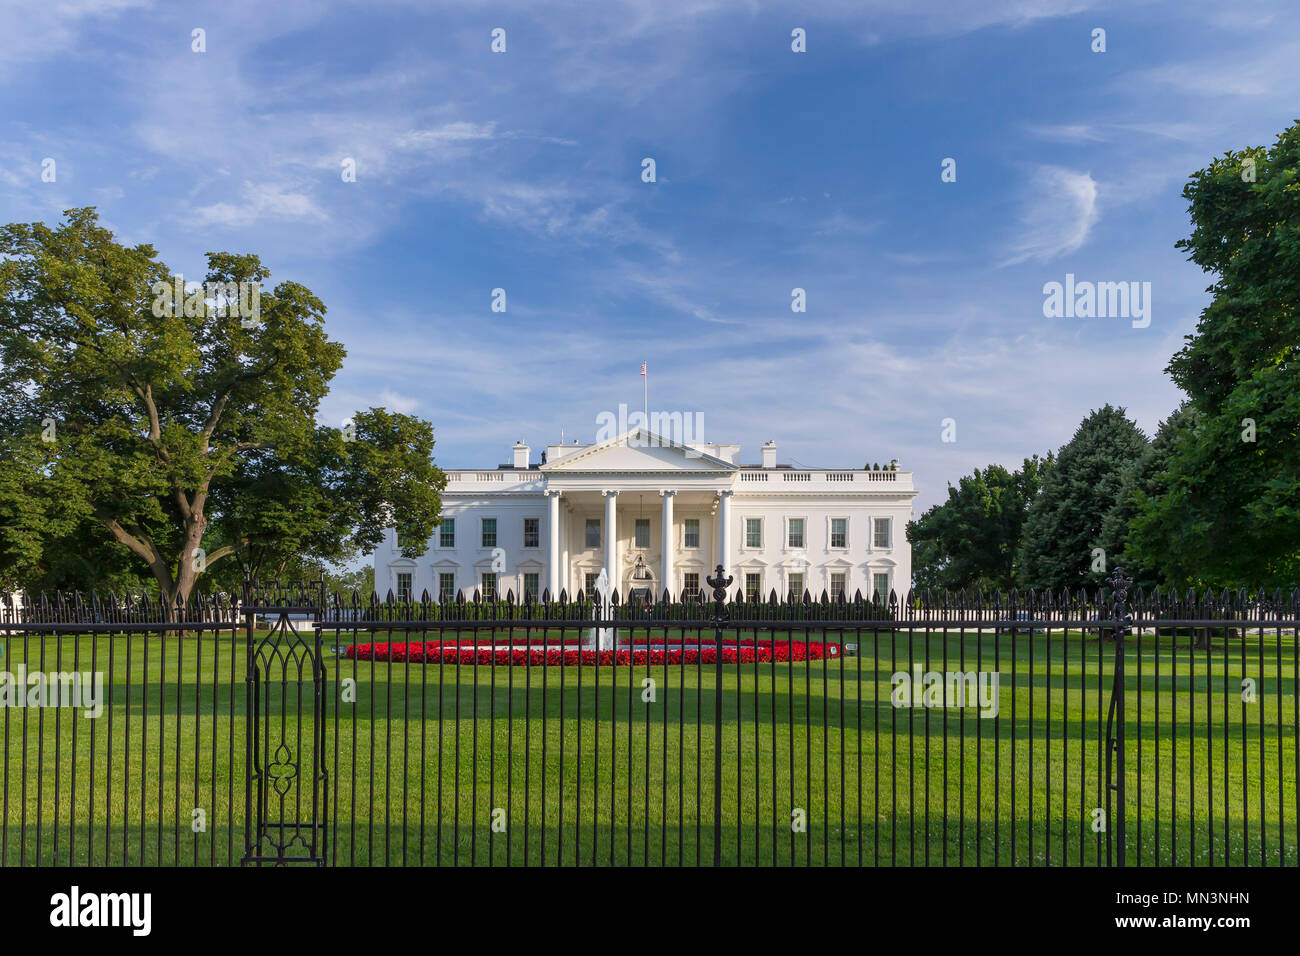 Soir d'été, façade sud, Maison Blanche, Washington DC, USA, Amérique du Nord Banque D'Images